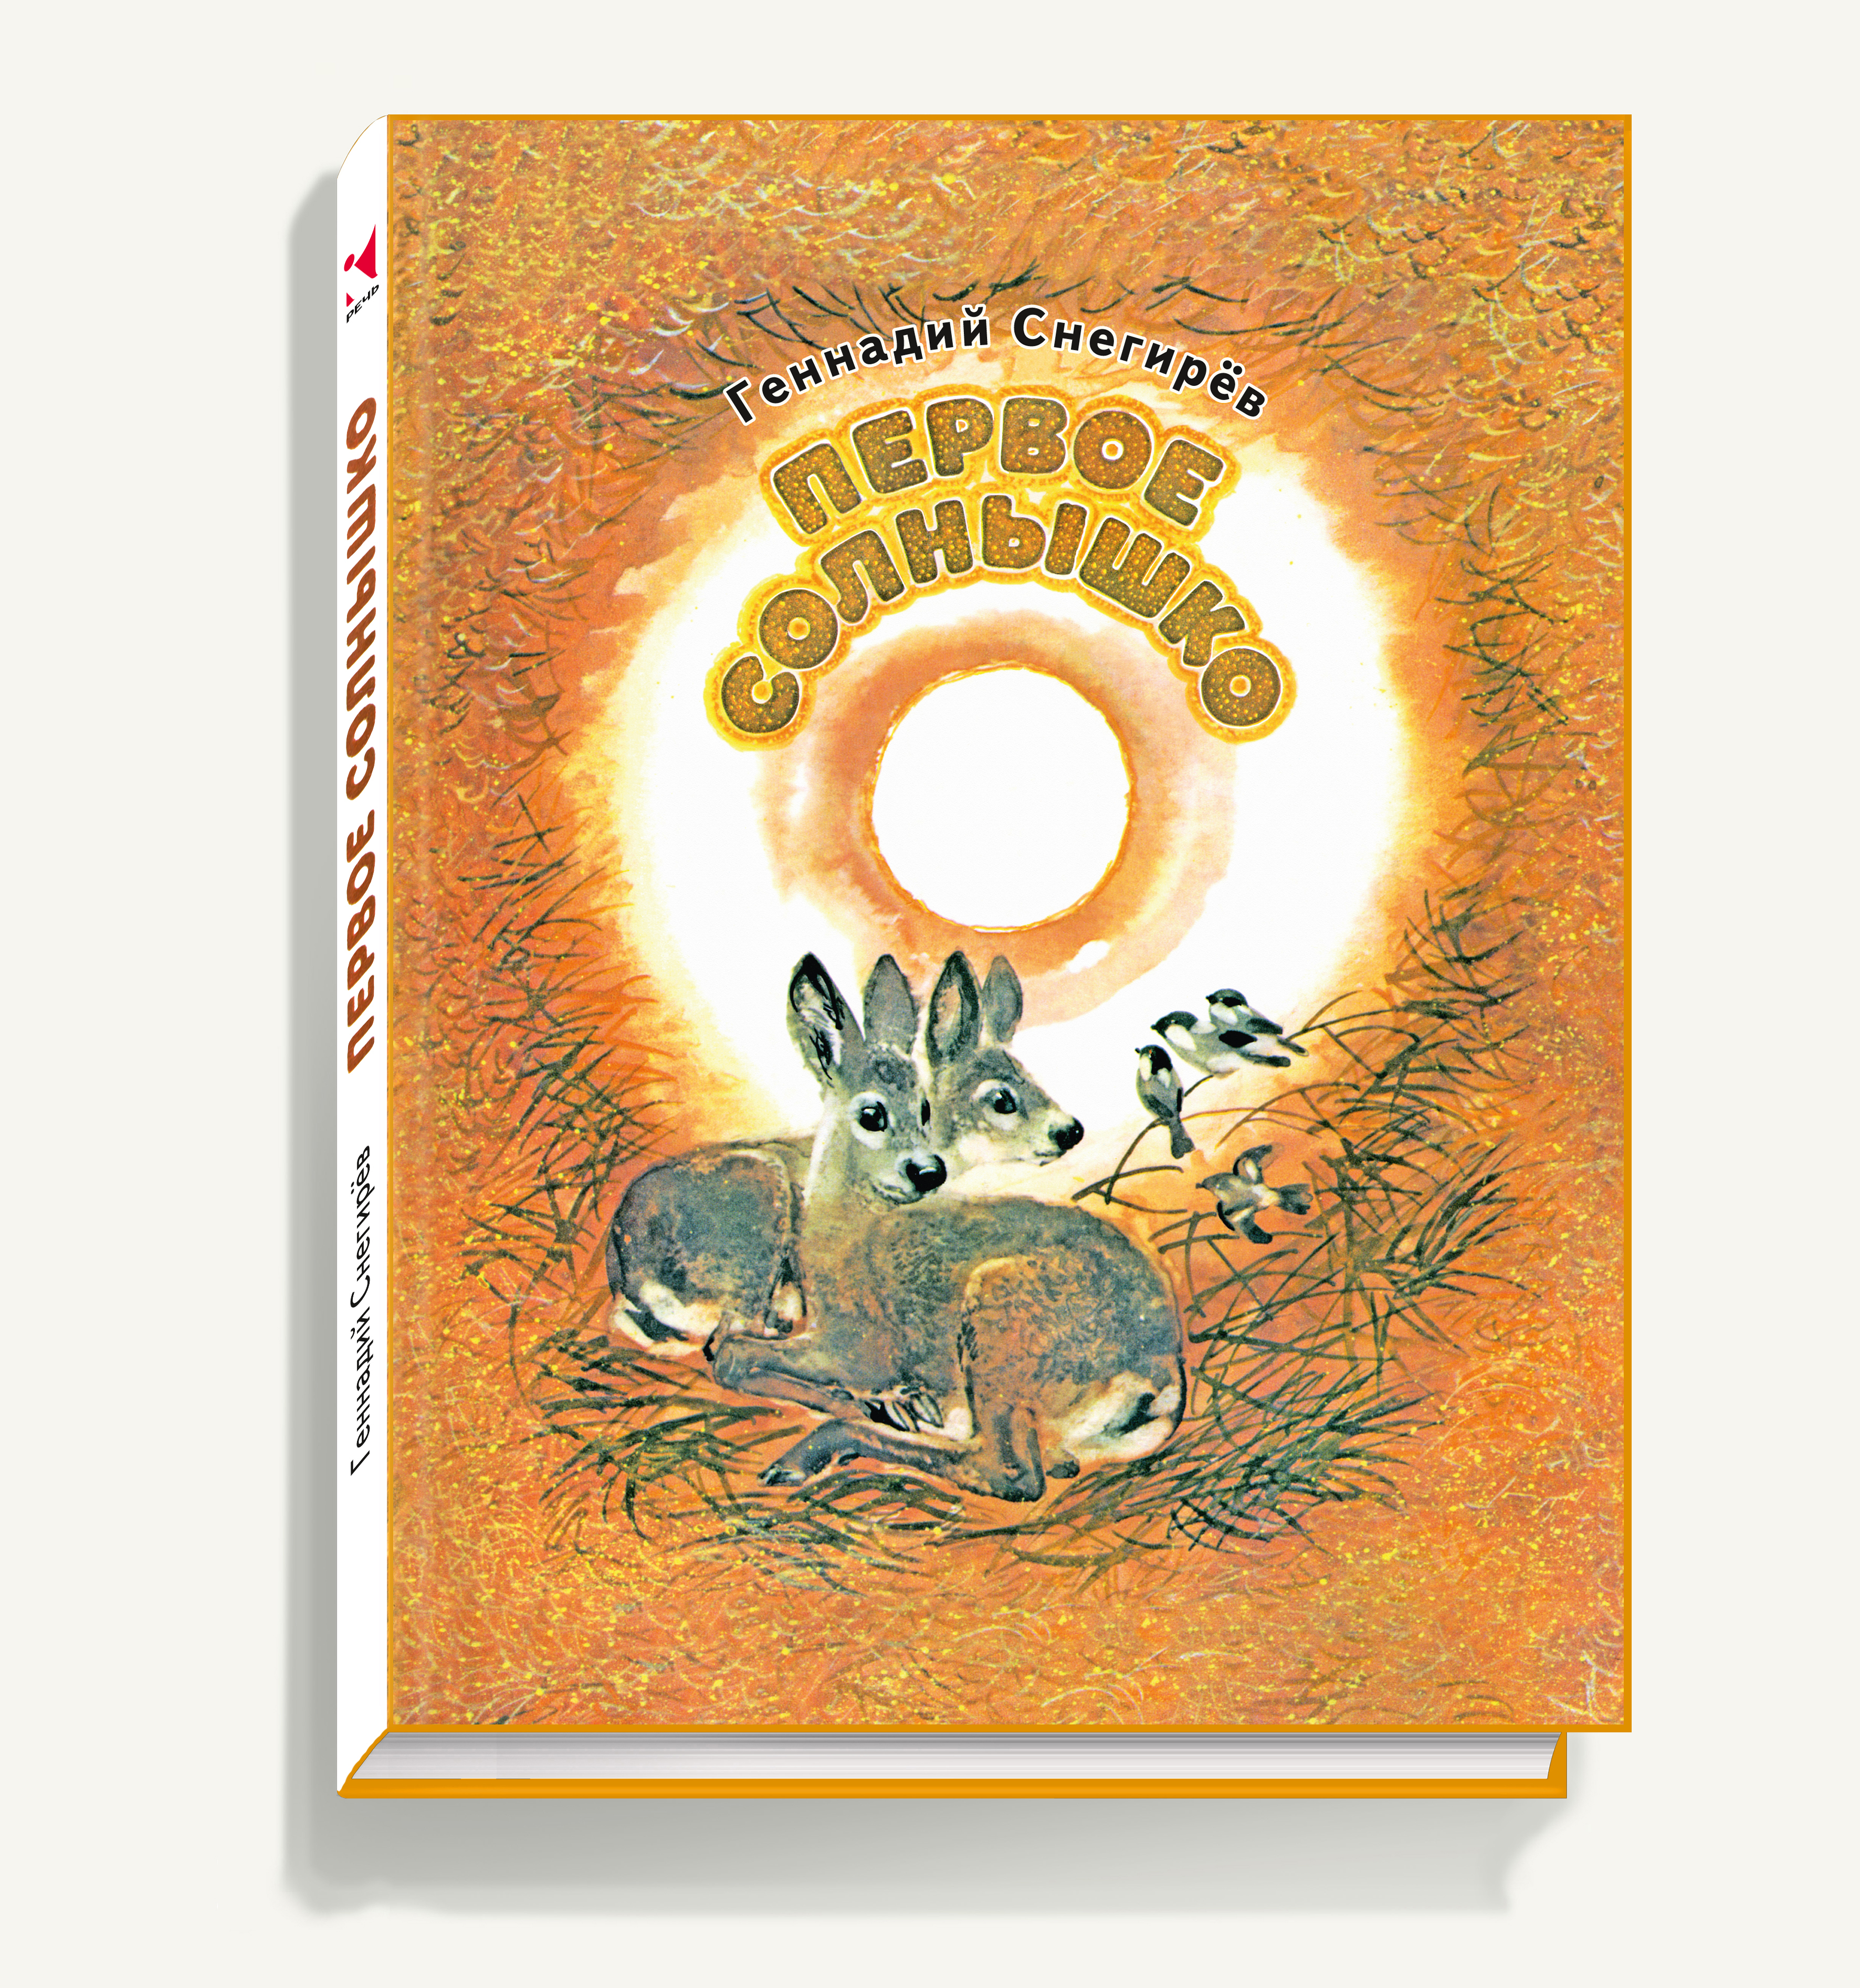 Книги про солнце. Первое солнышко книга Снегирев. Детские книги о солнце.